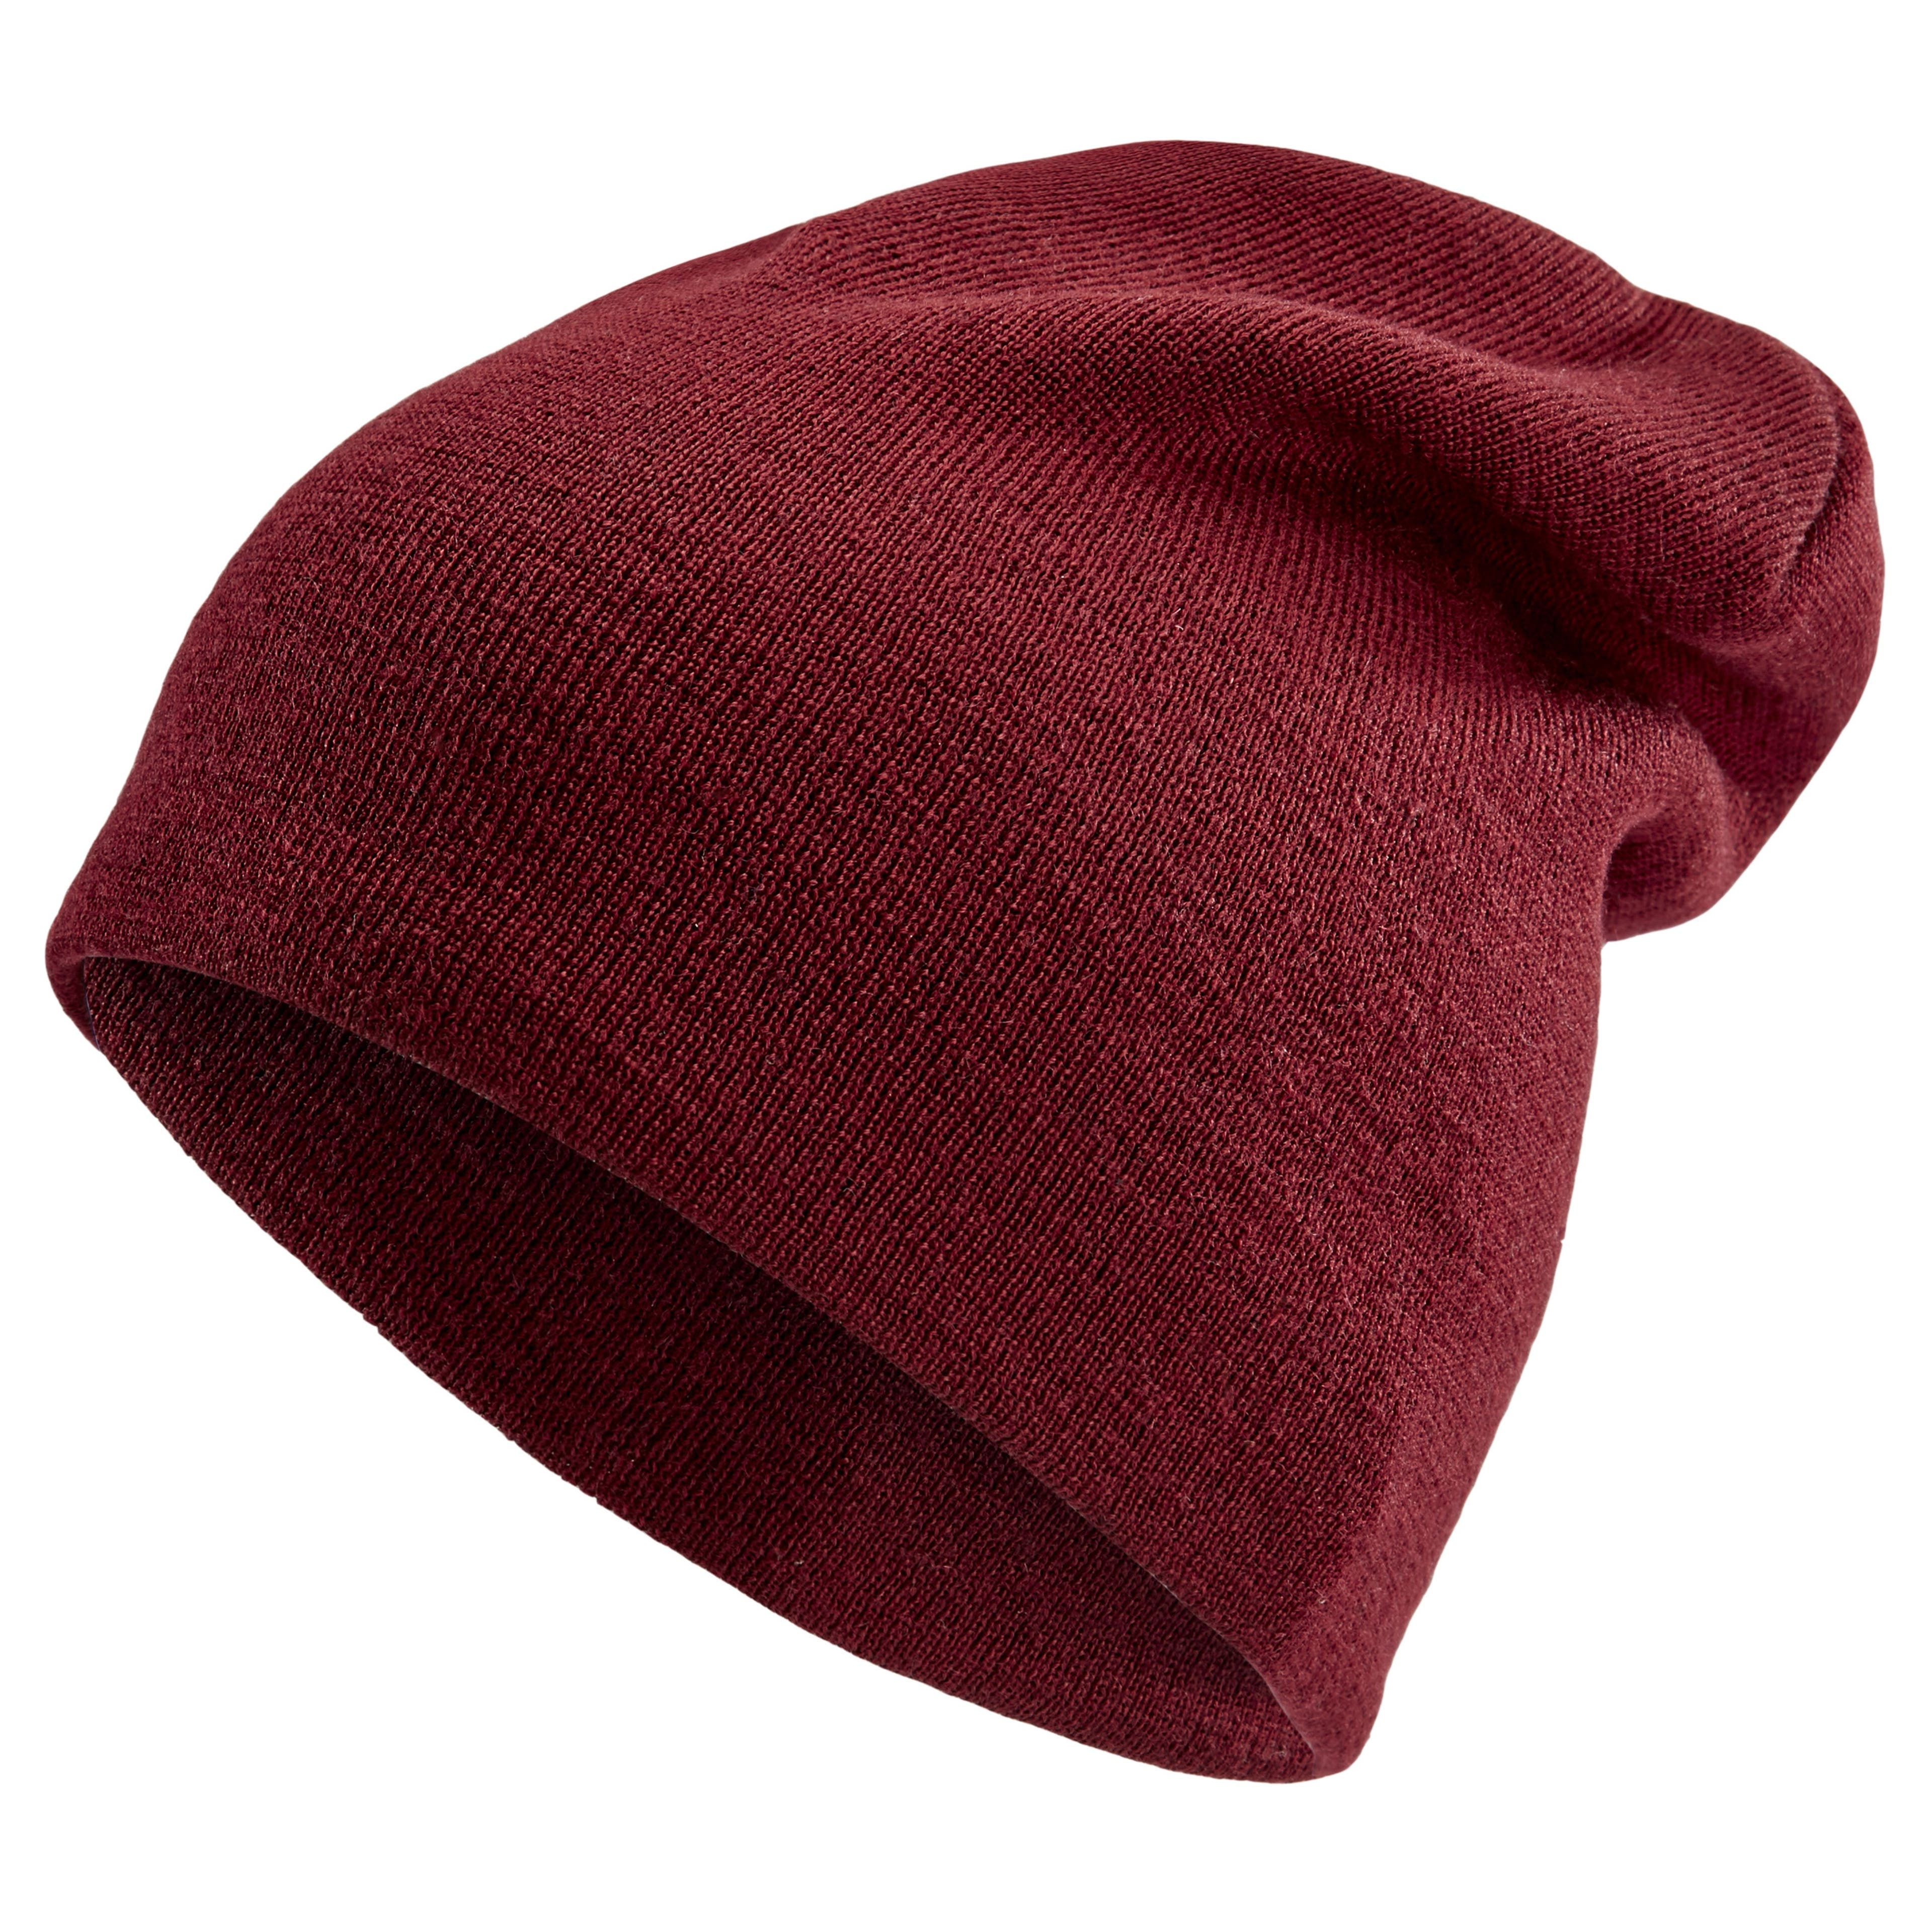 Bonnet brodé bordeaux sombre rouge Levi's - Echarpe, gant & bonnet Homme  sur MenCorner